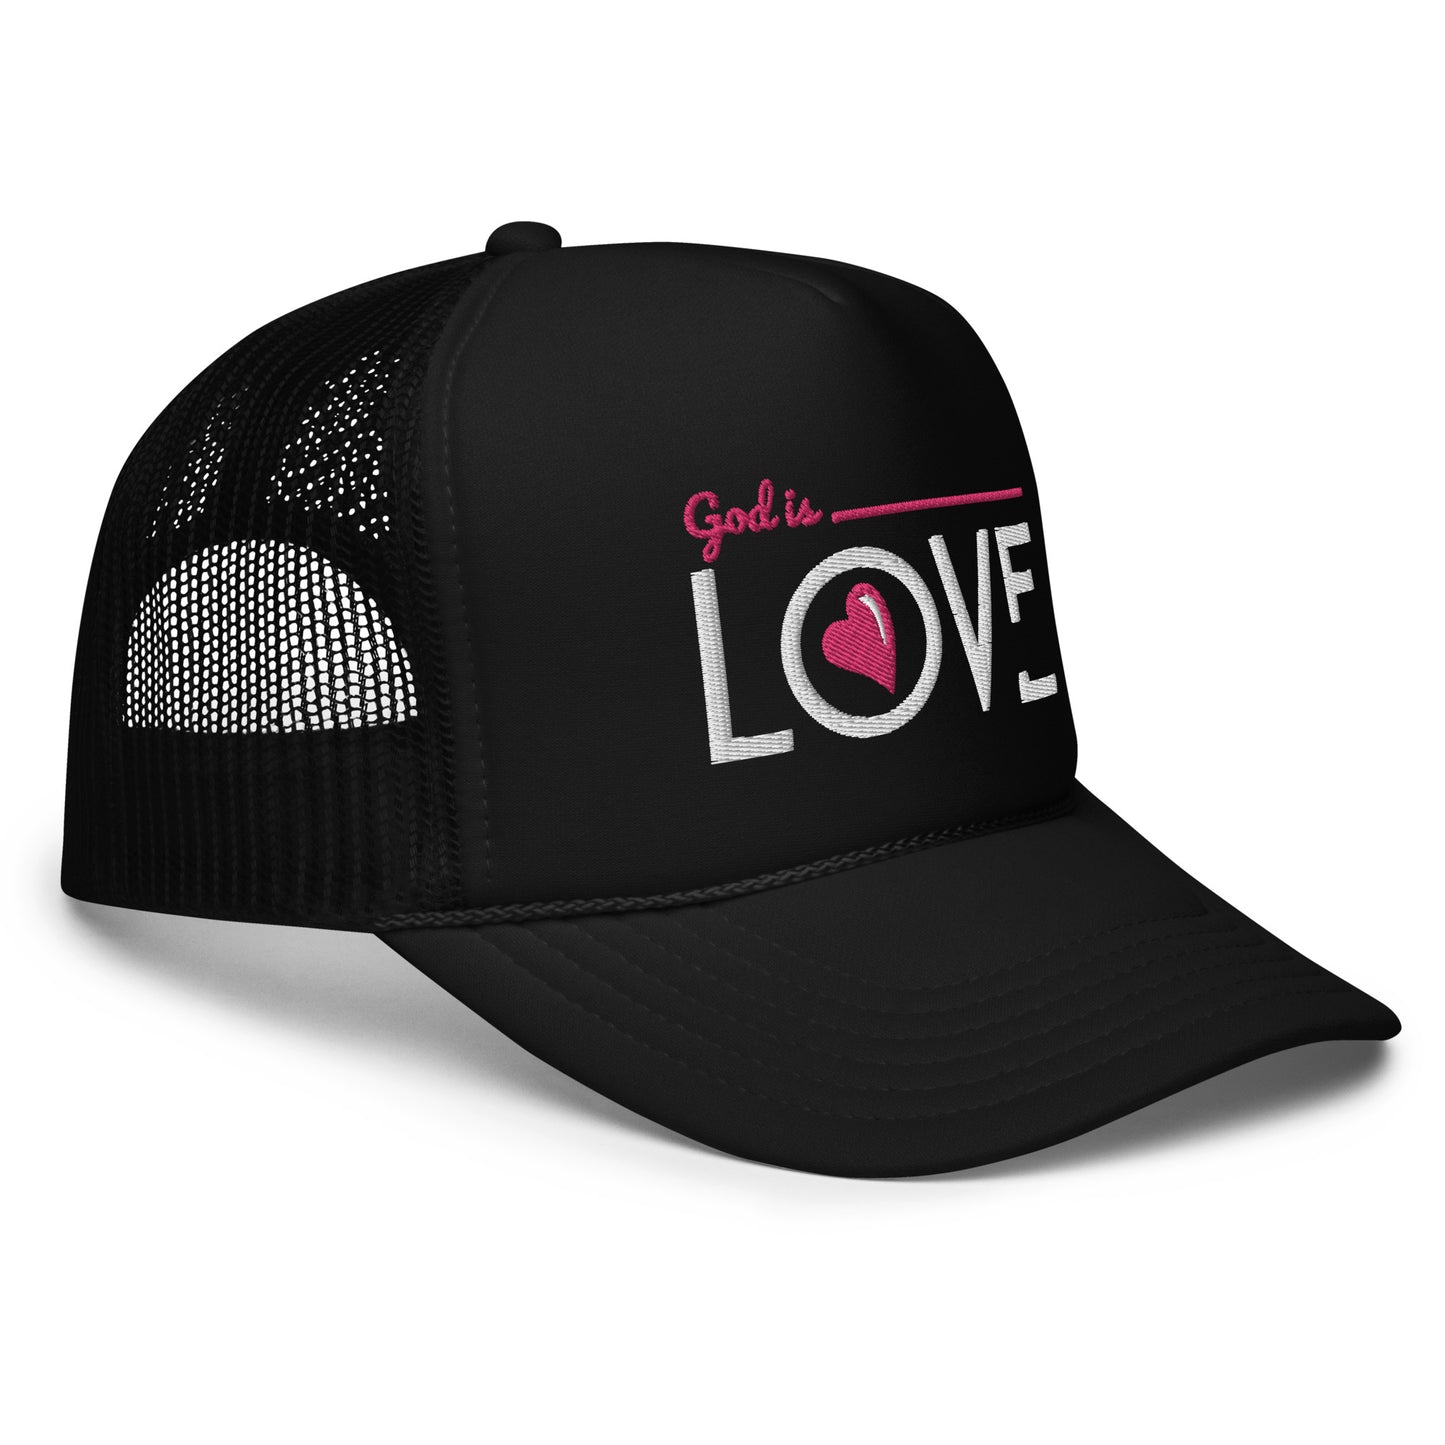 “God is Love” Foam trucker hat